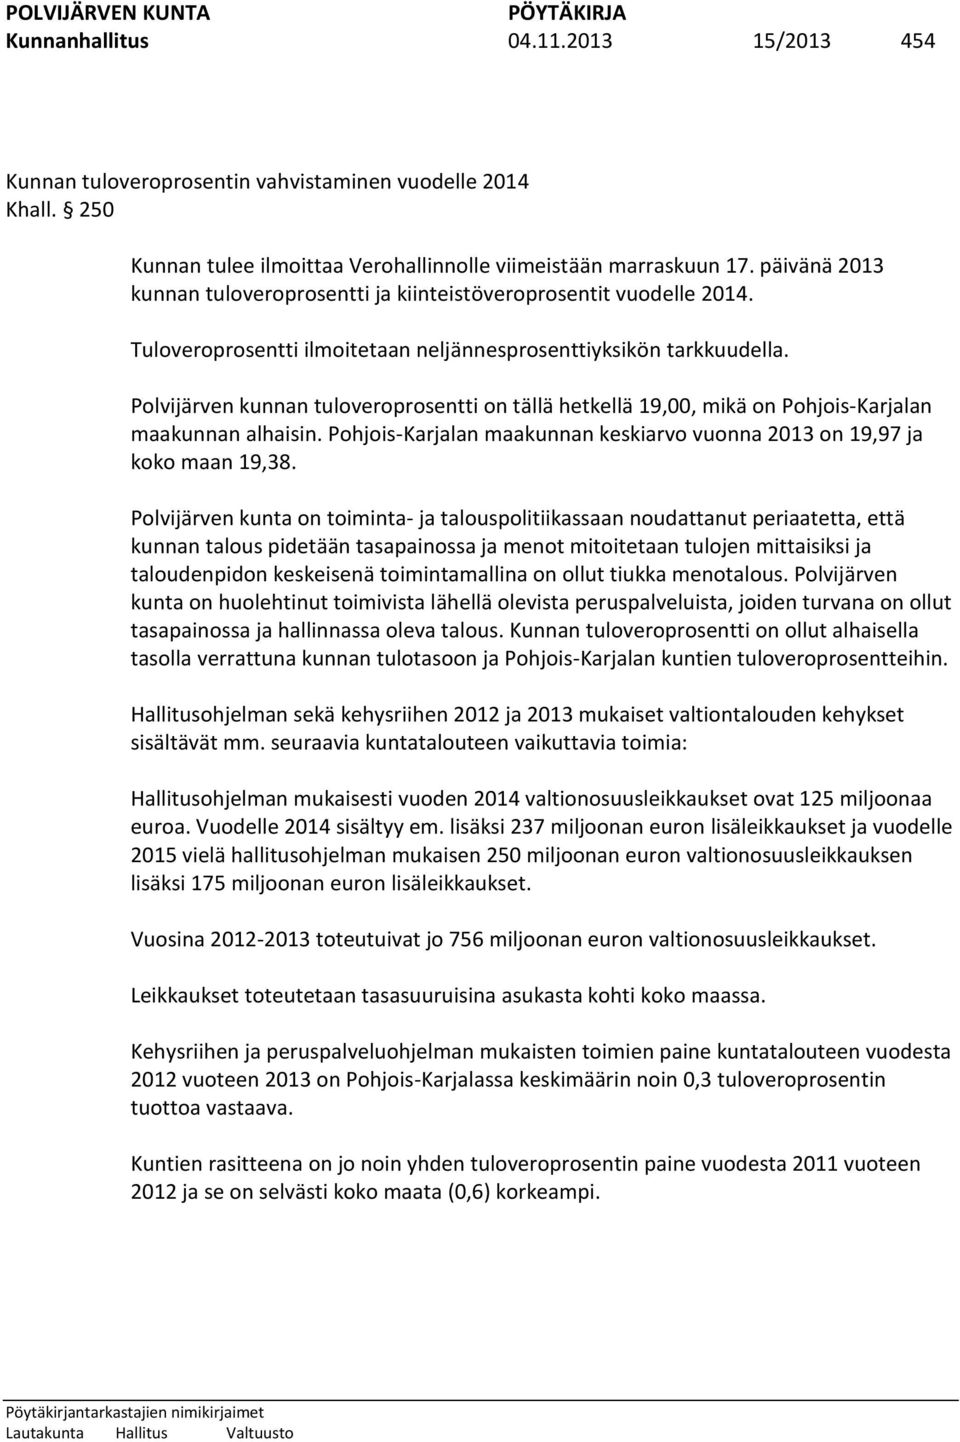 Polvijärven kunnan tuloveroprosentti on tällä hetkellä 19,00, mikä on Pohjois-Karjalan maakunnan alhaisin. Pohjois-Karjalan maakunnan keskiarvo vuonna 2013 on 19,97 ja koko maan 19,38.